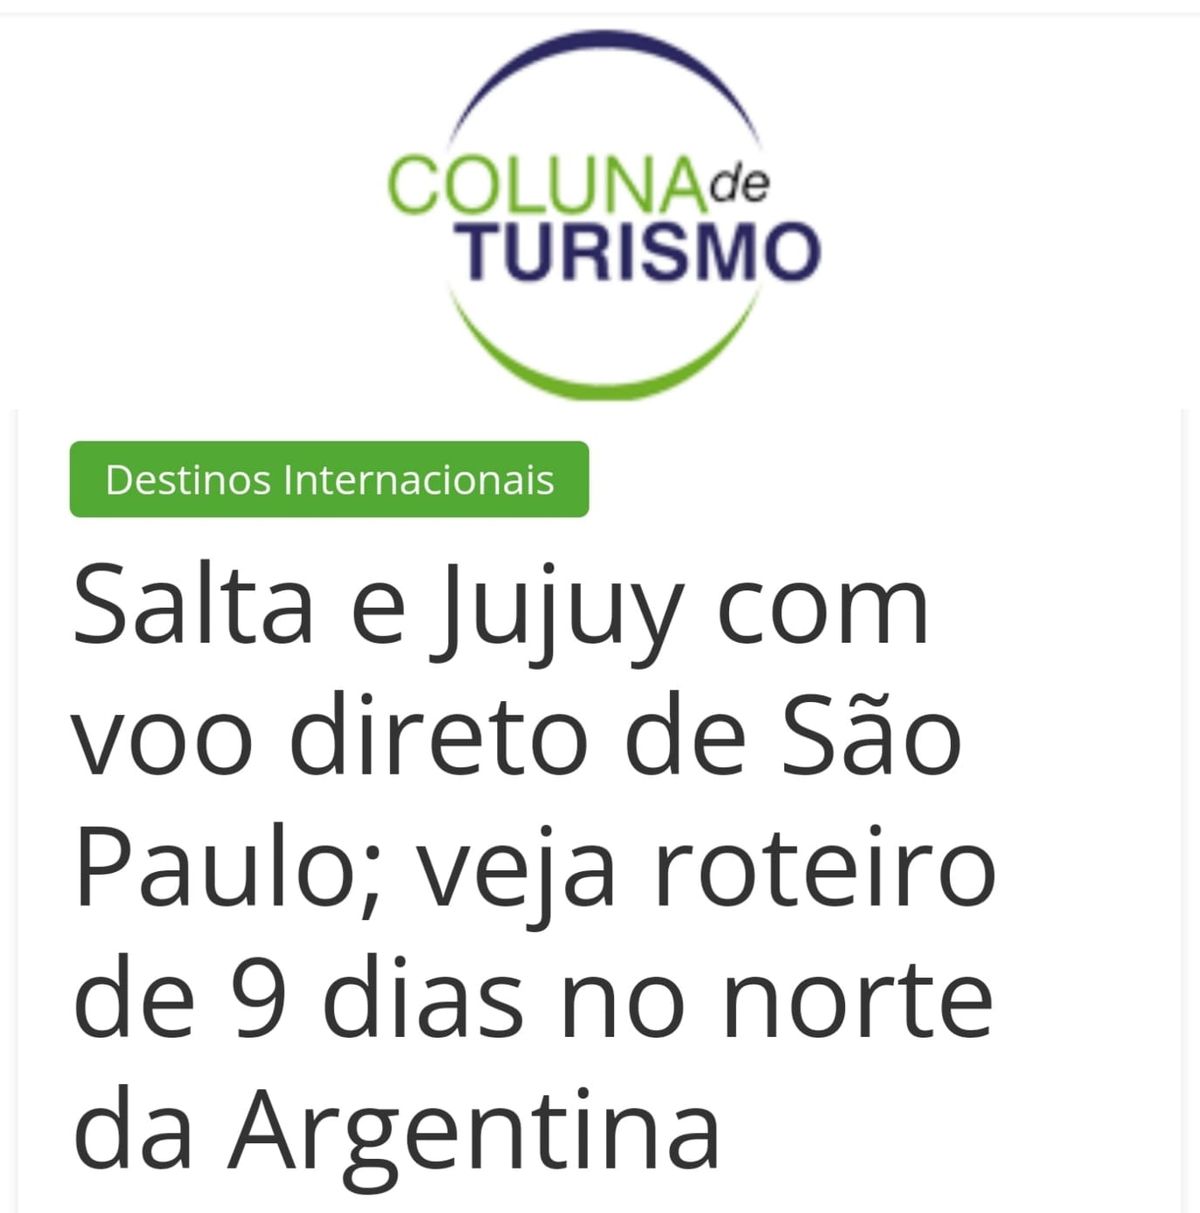 Importante repercusión de la promoción turística de Jujuy en medios de Brasil